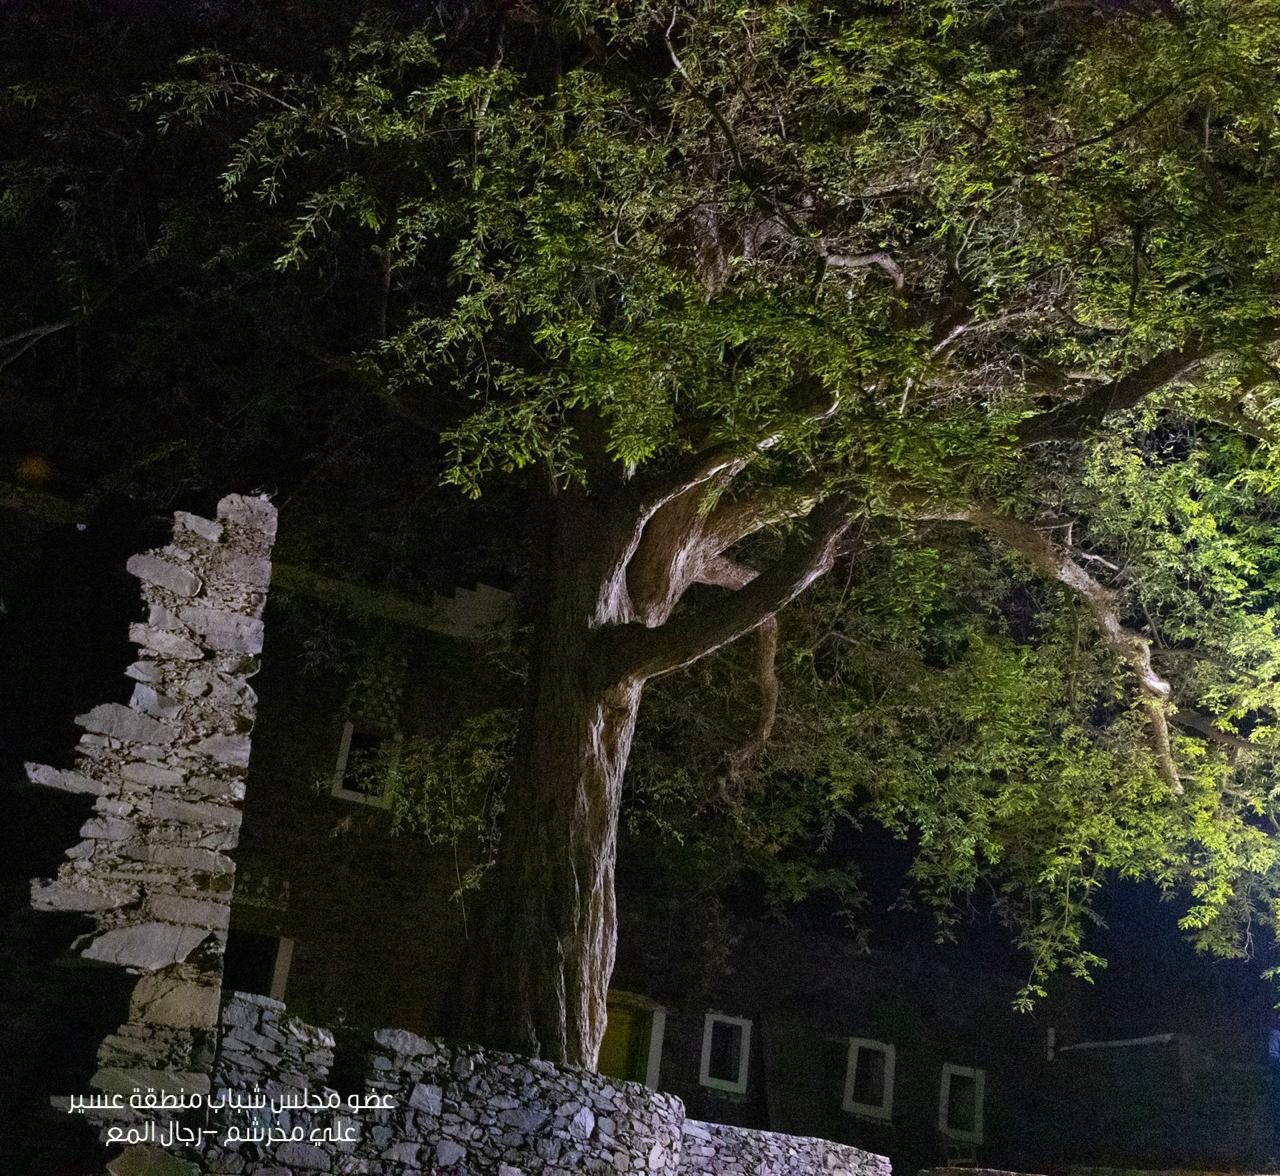 الأمير تركي بن طلال يُوجّه بحماية شجرة “الحُمَر” المُعمّرة في رجال ألمع 